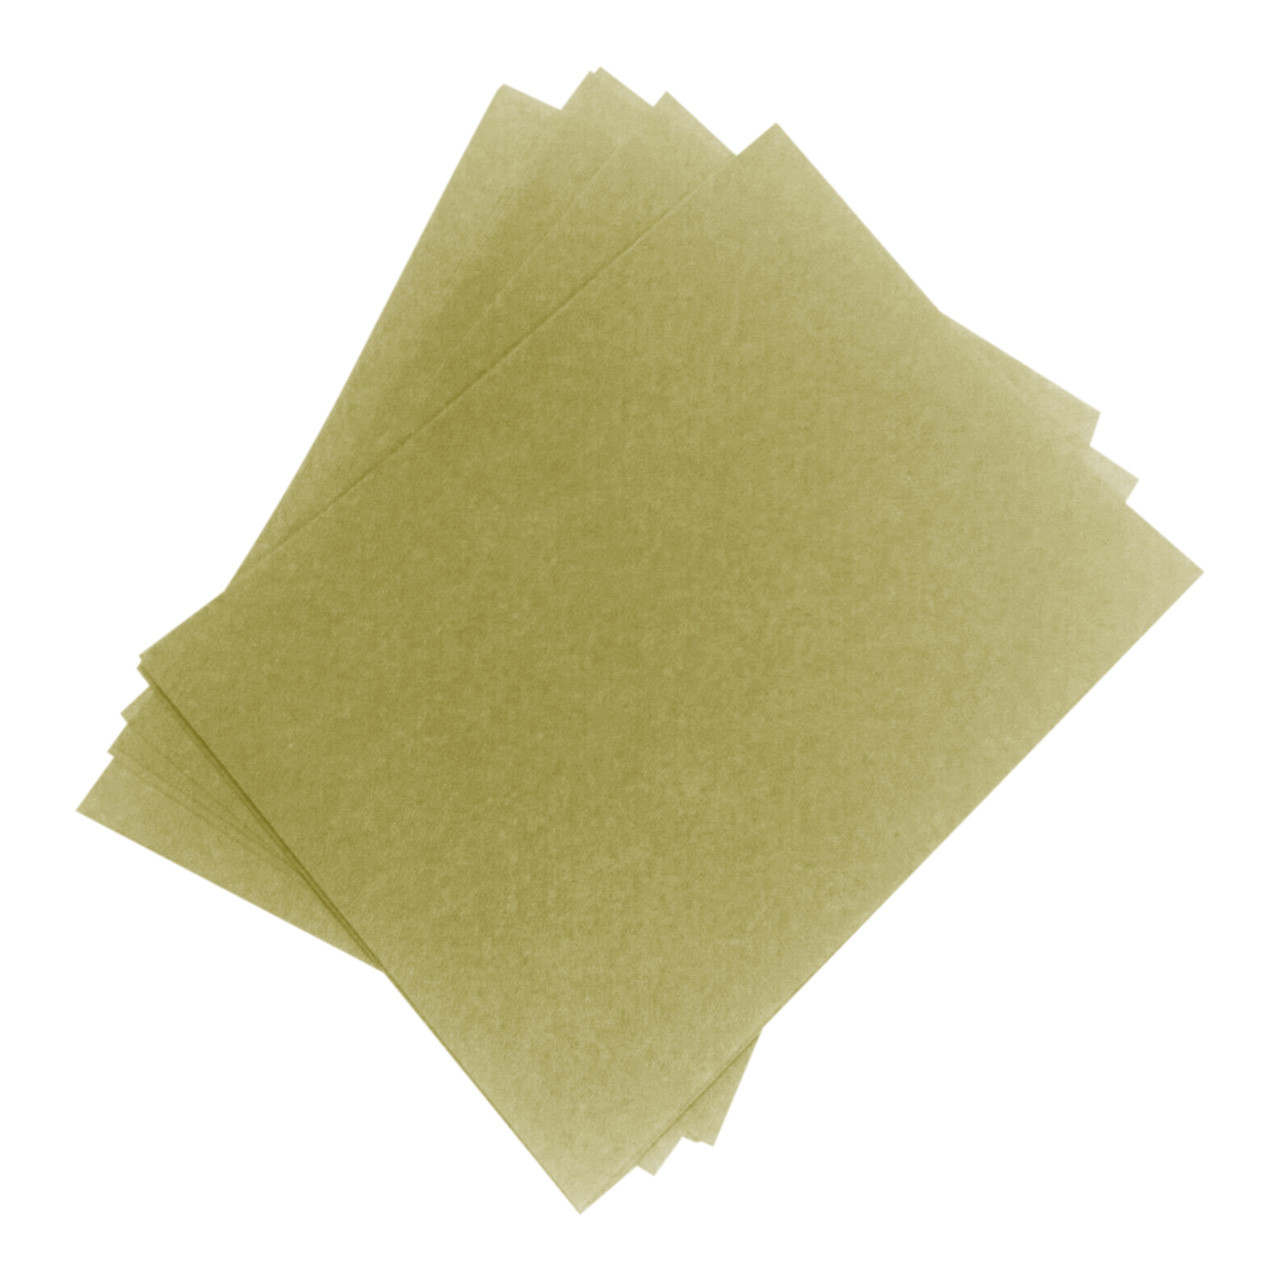 3M™ Wetordry™ Green 400 Grit Polishing Paper (Pkg. of 5)